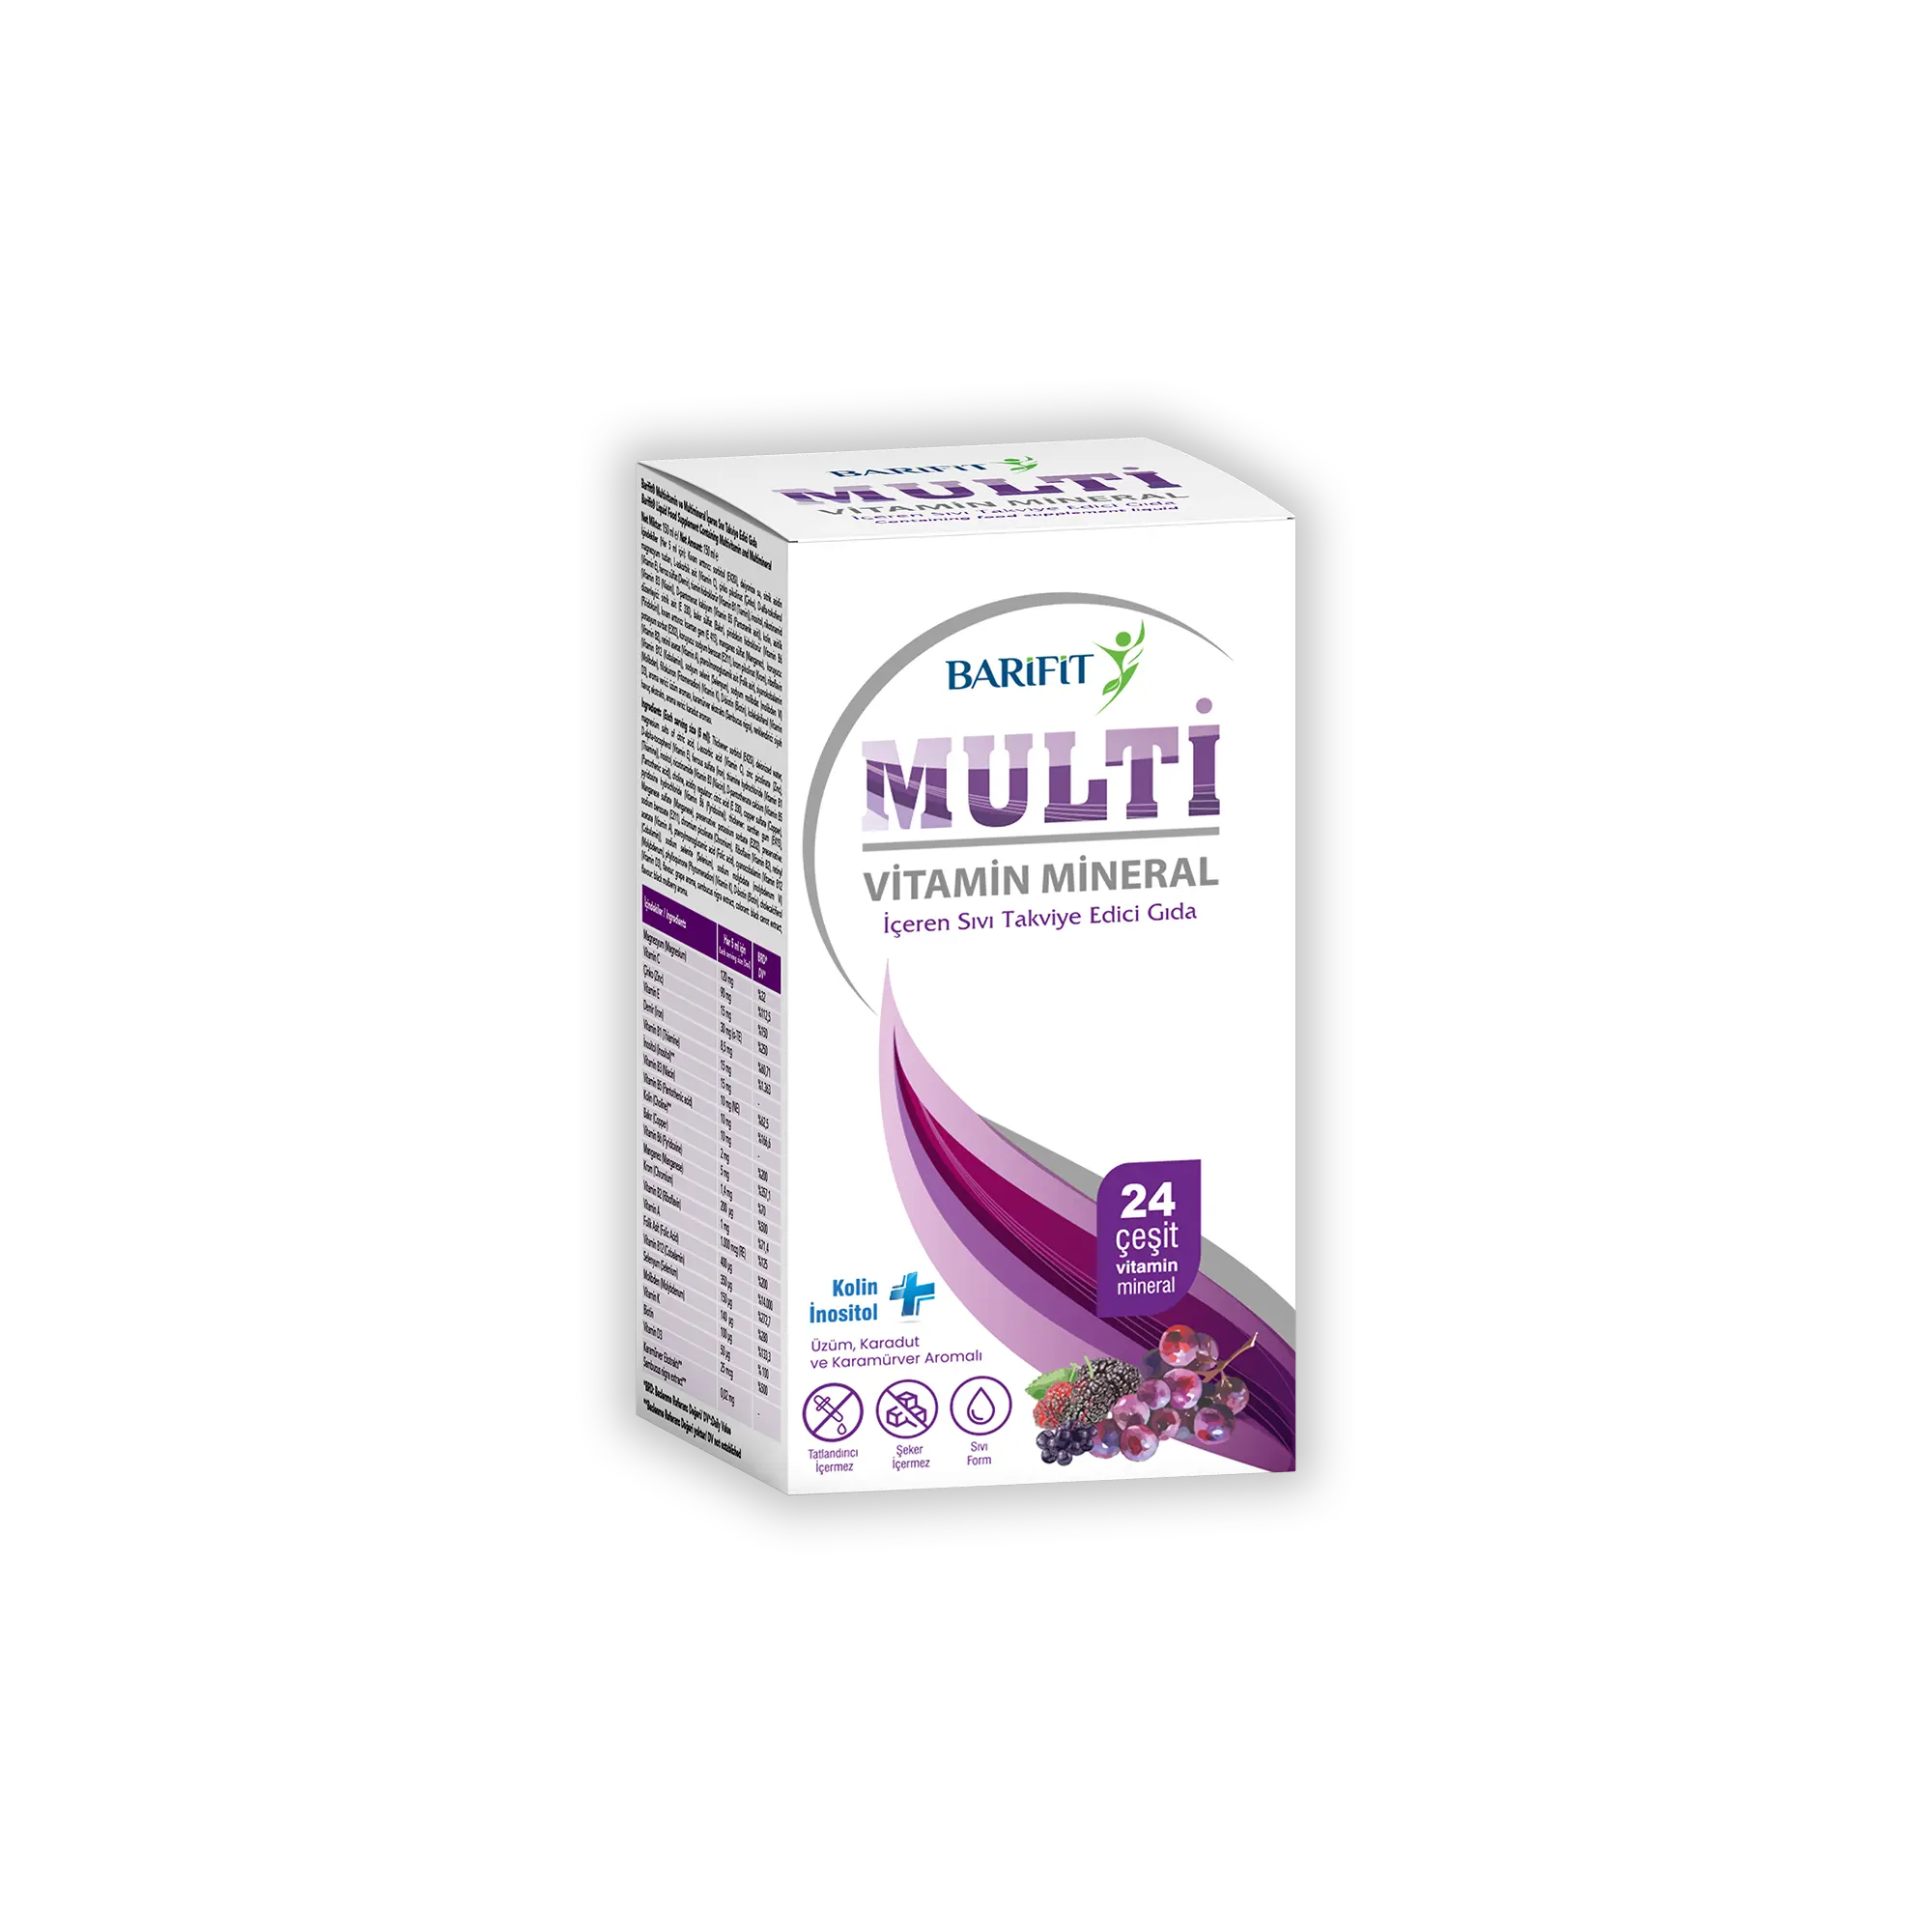 LIQUID MULTIVITAMIN SUPPLEMENT (150 ml)